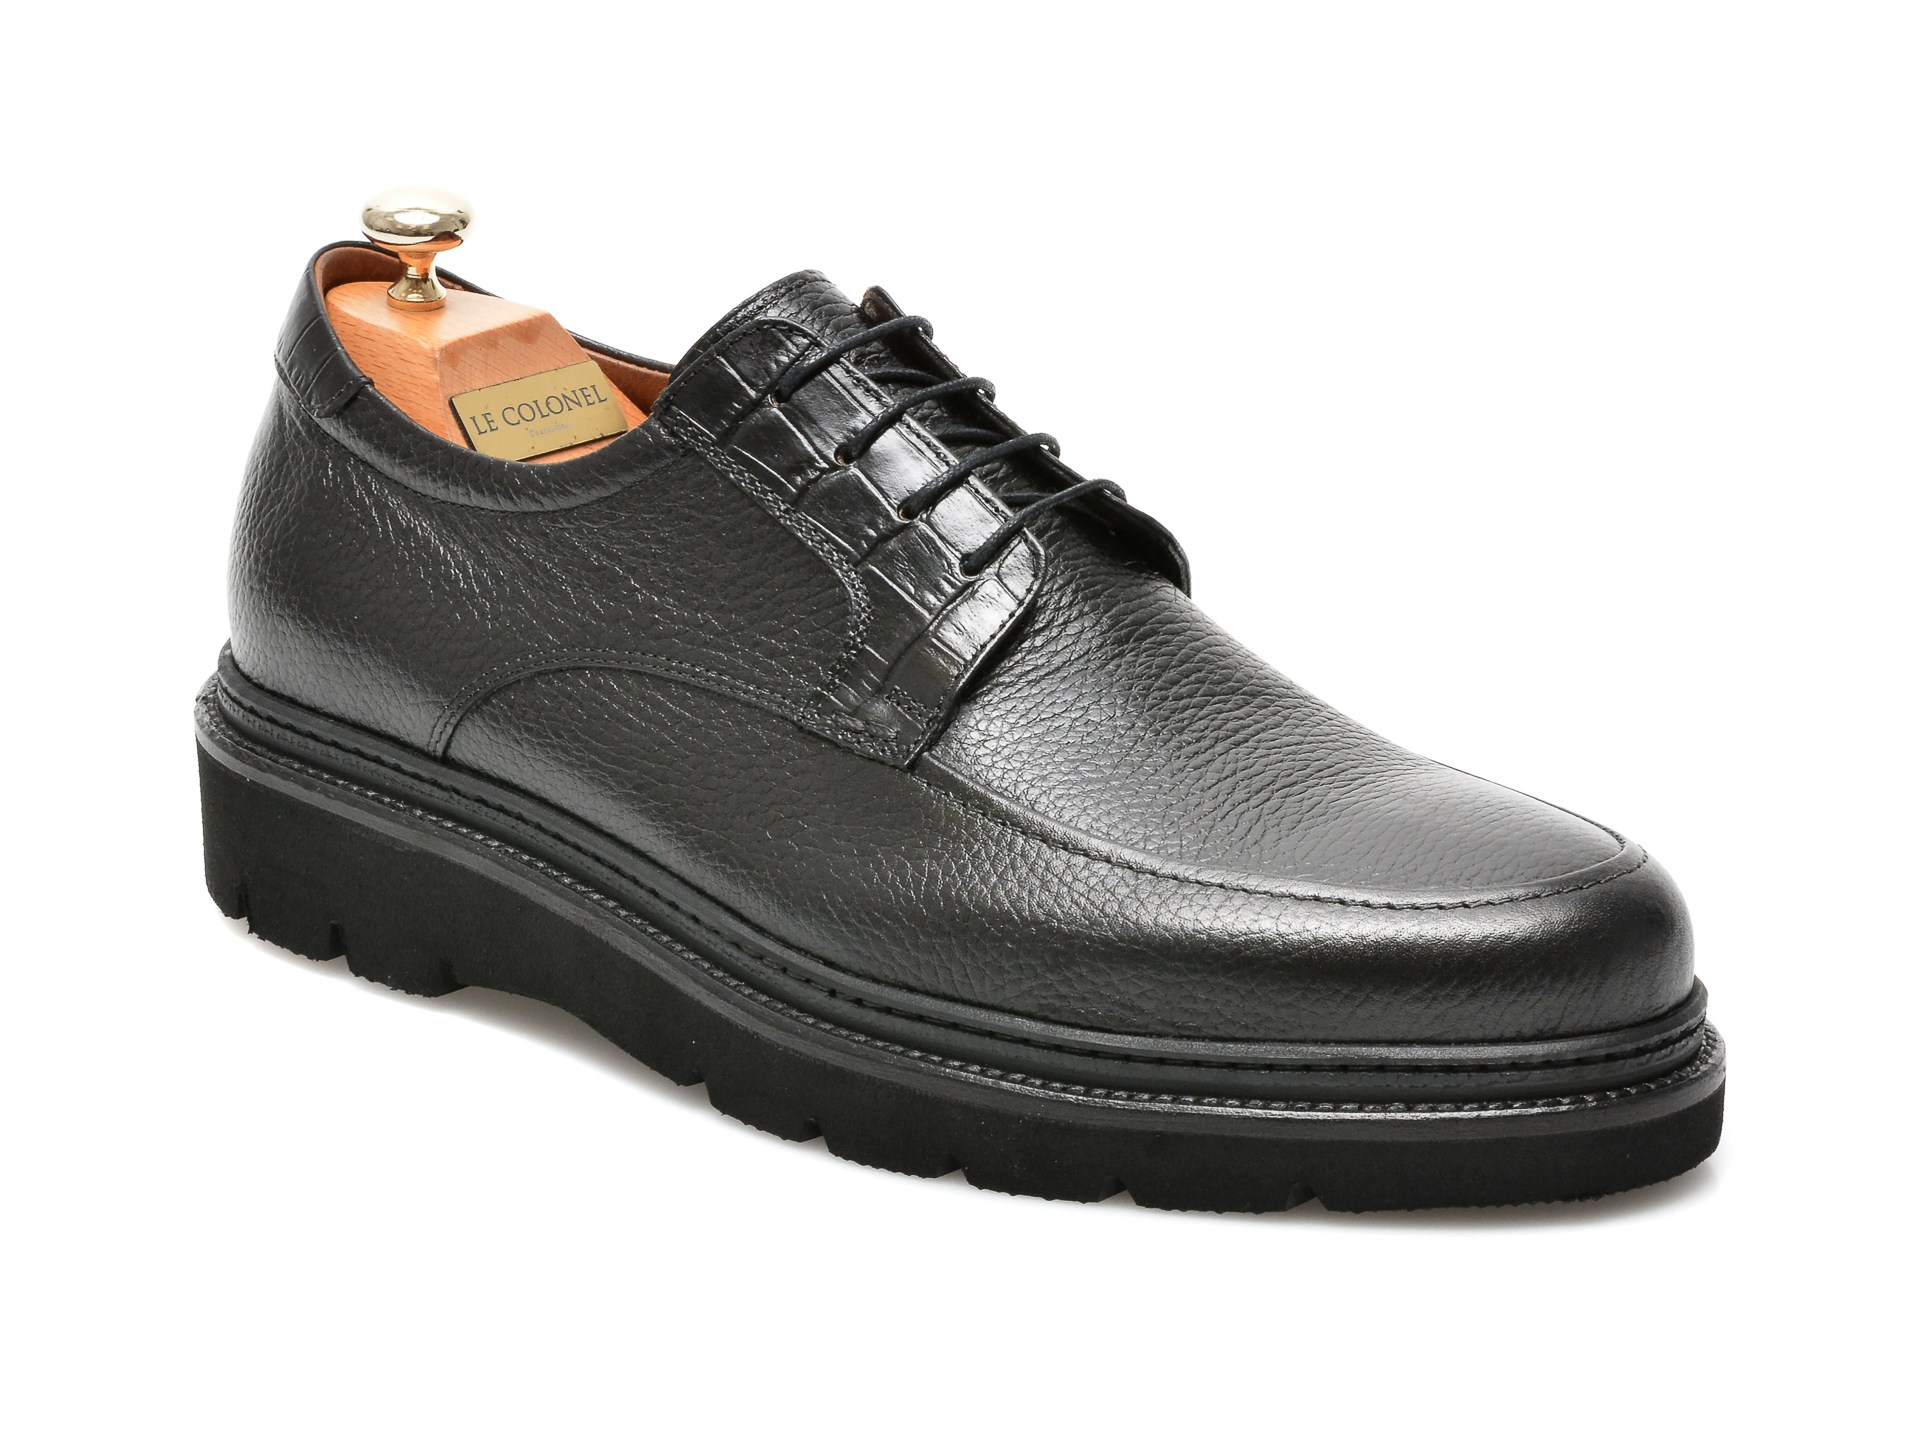 Pantofi LE COLONEL negri, 47302, din piele naturala Le Colonel